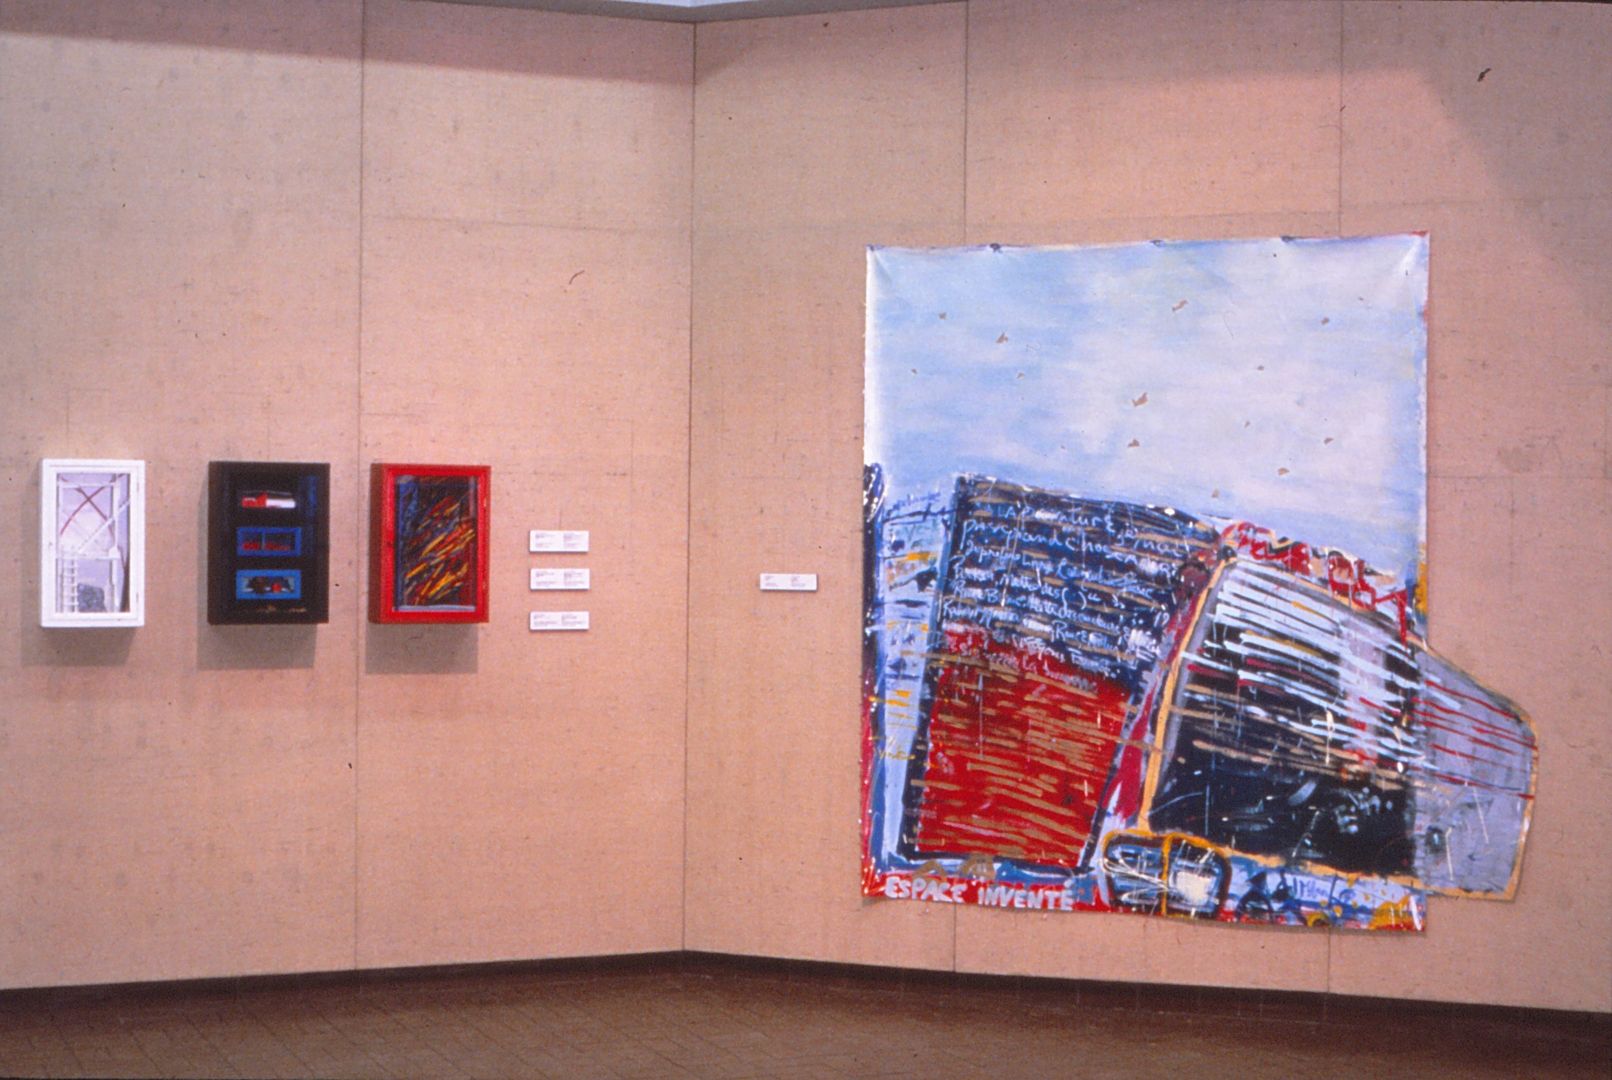 Vue de l’exposition L’art pense, Université de Montréal, Hall d'honneur, Montréal, 14-19 août 1984.